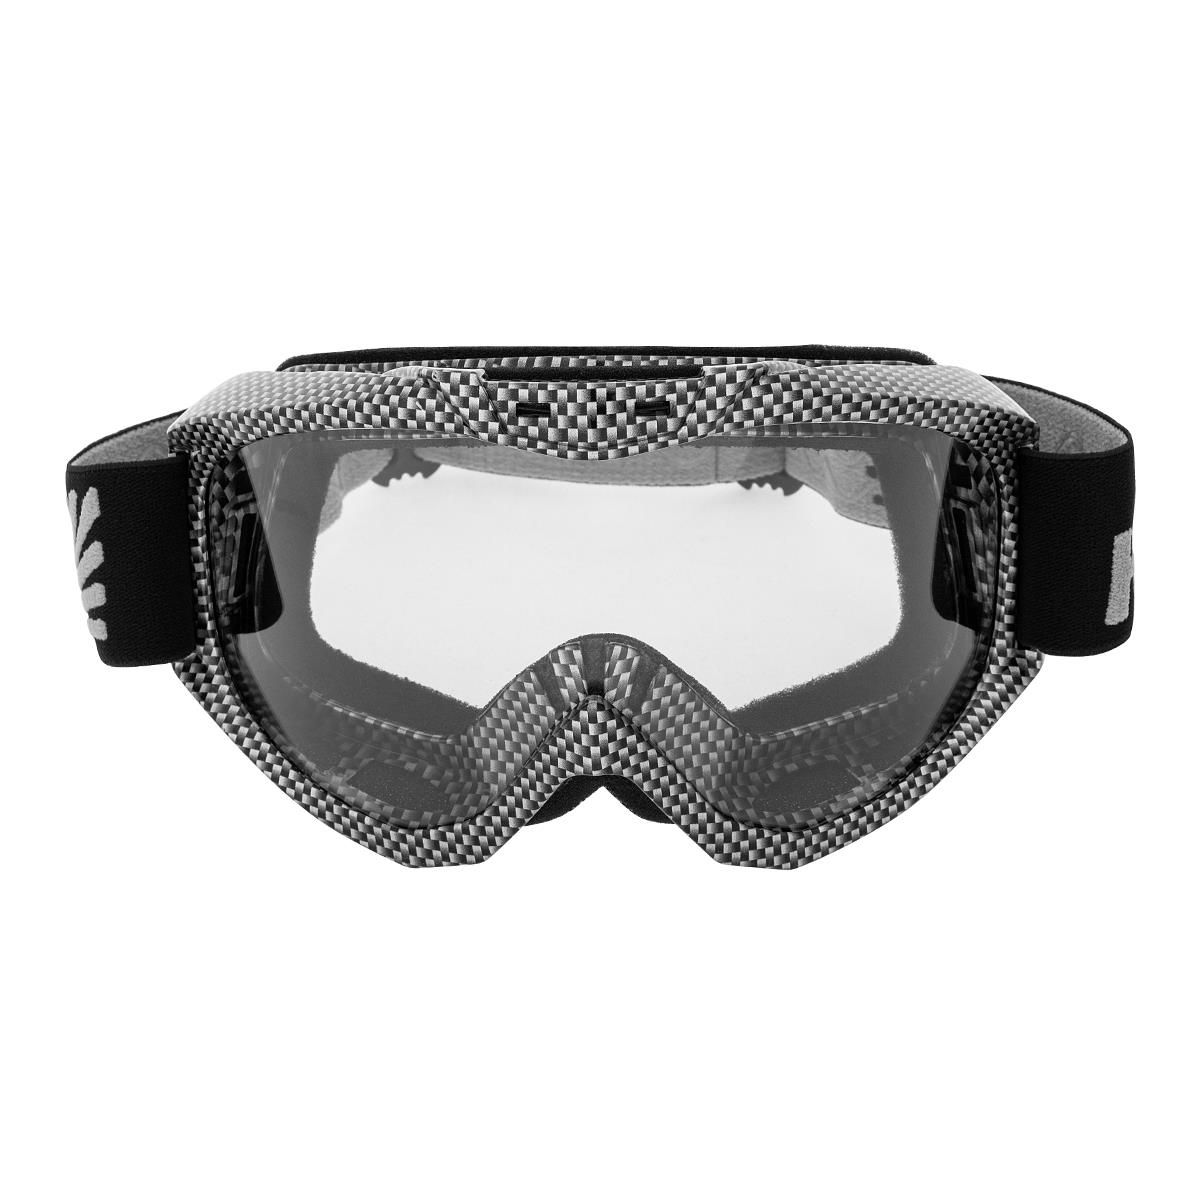 Очки горнолыжные HS-MT-001-C Helios очки маска для езды на мототехнике разборные визор прозрачный